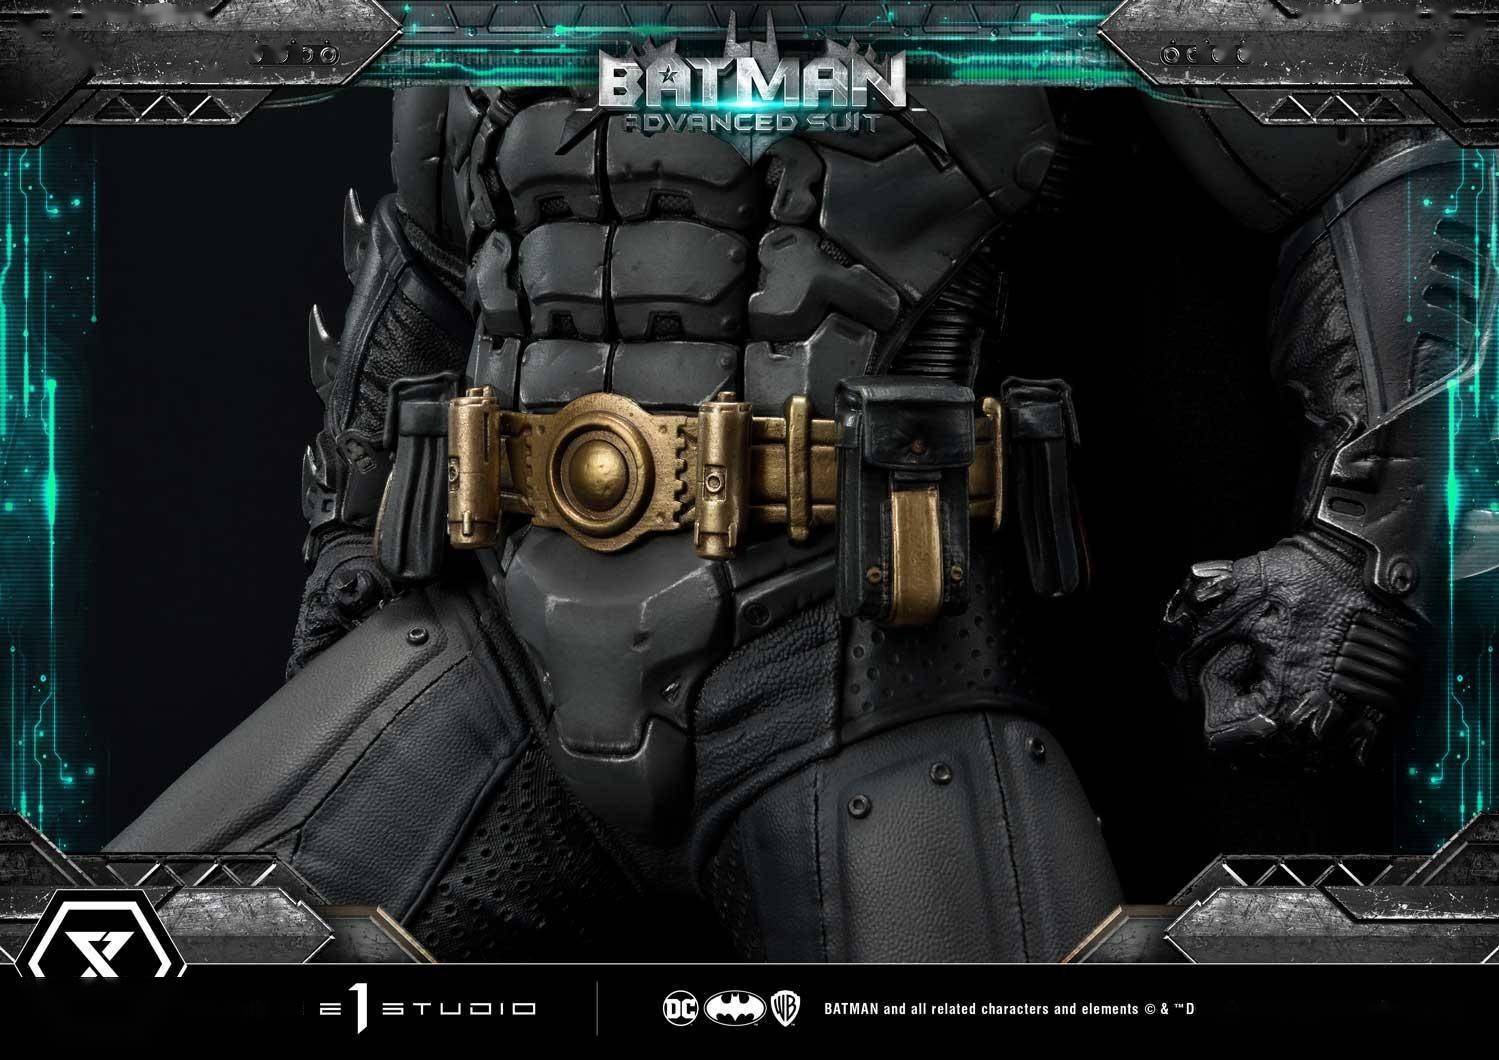 p1s超级霸气蝙蝠侠升级版战衣与芬里尔装甲套装 售价2999美元